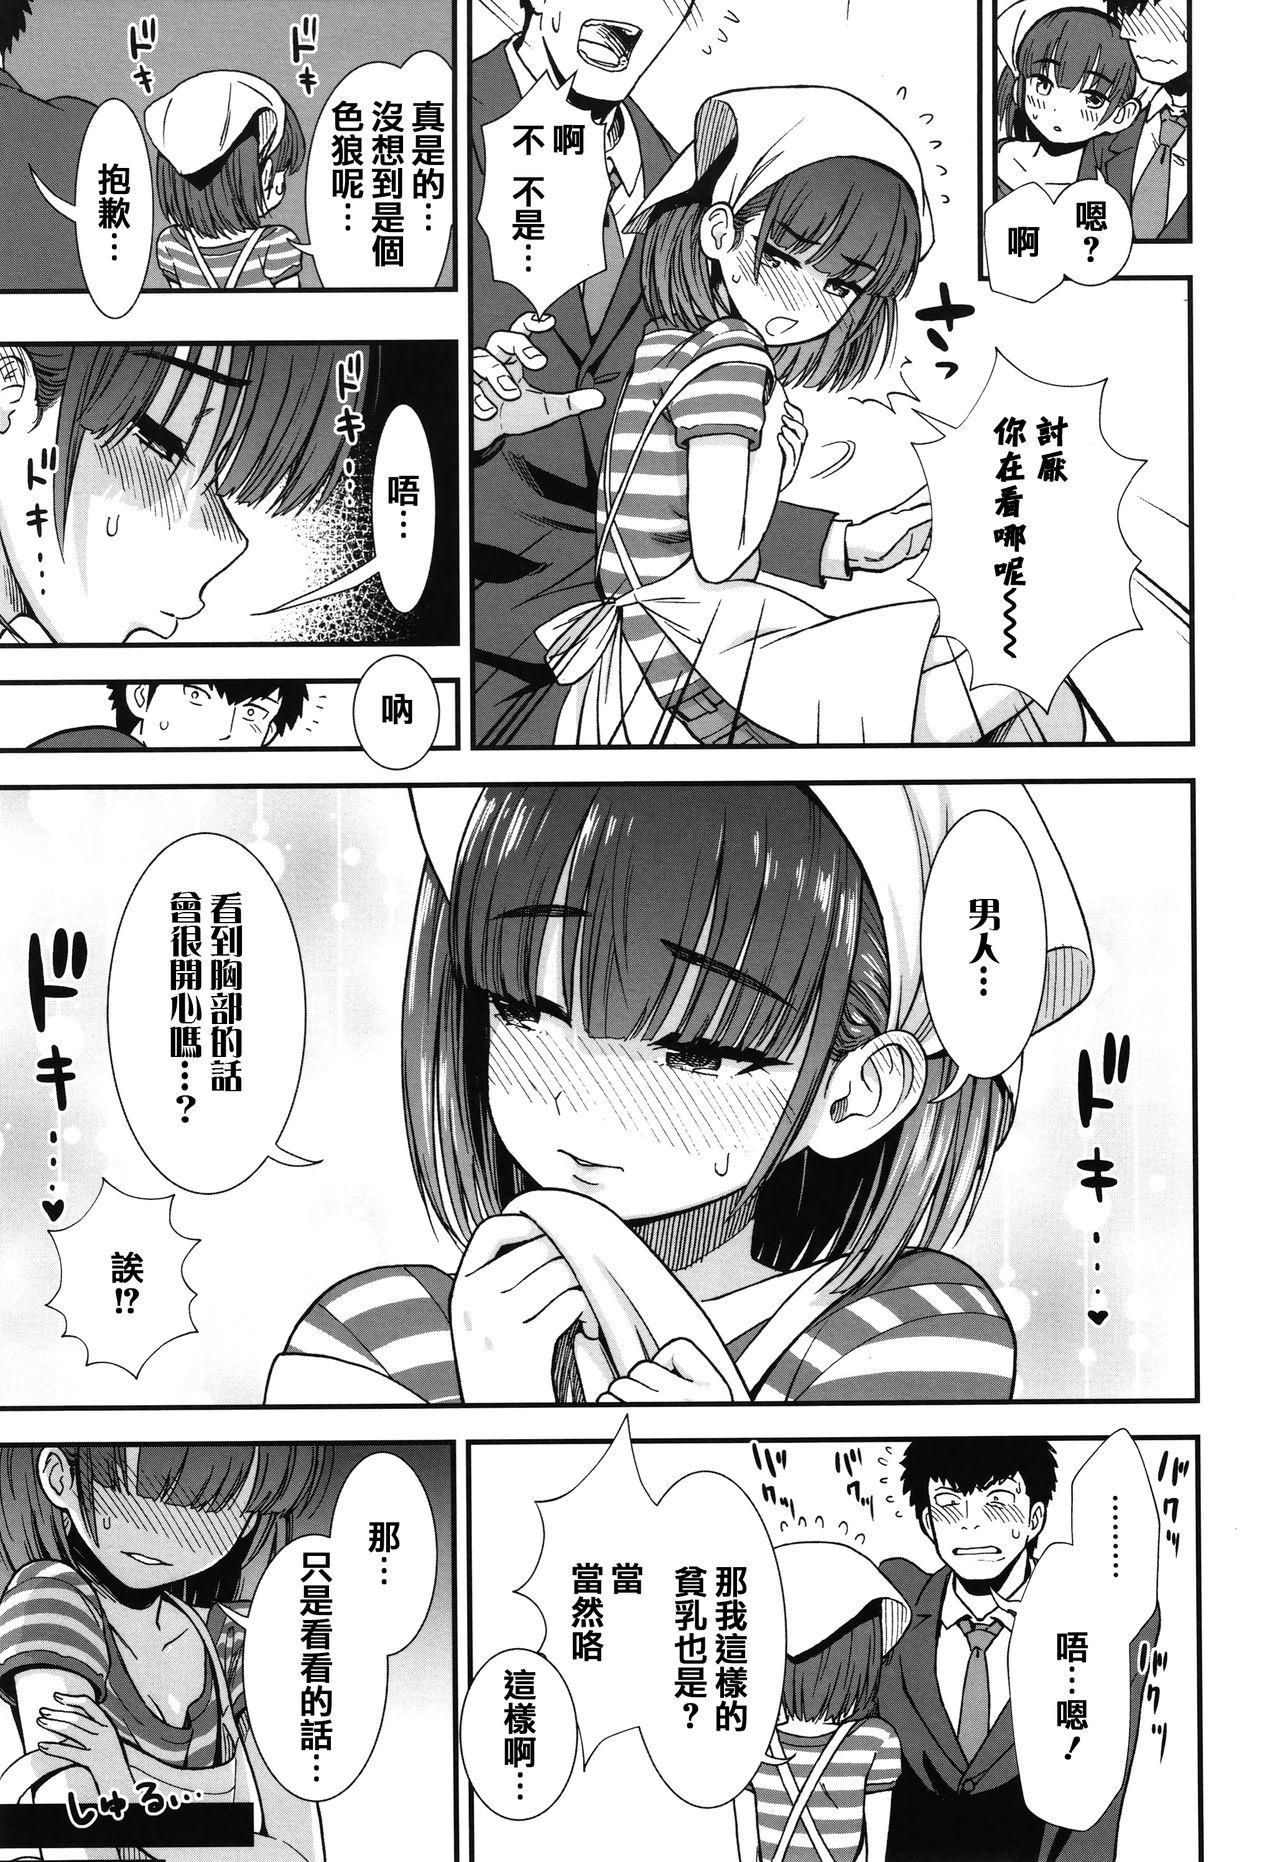 Peludo Ore wa Kuzu dakara koso Sukuwareru Kenri ga Aru! Kissing - Page 11